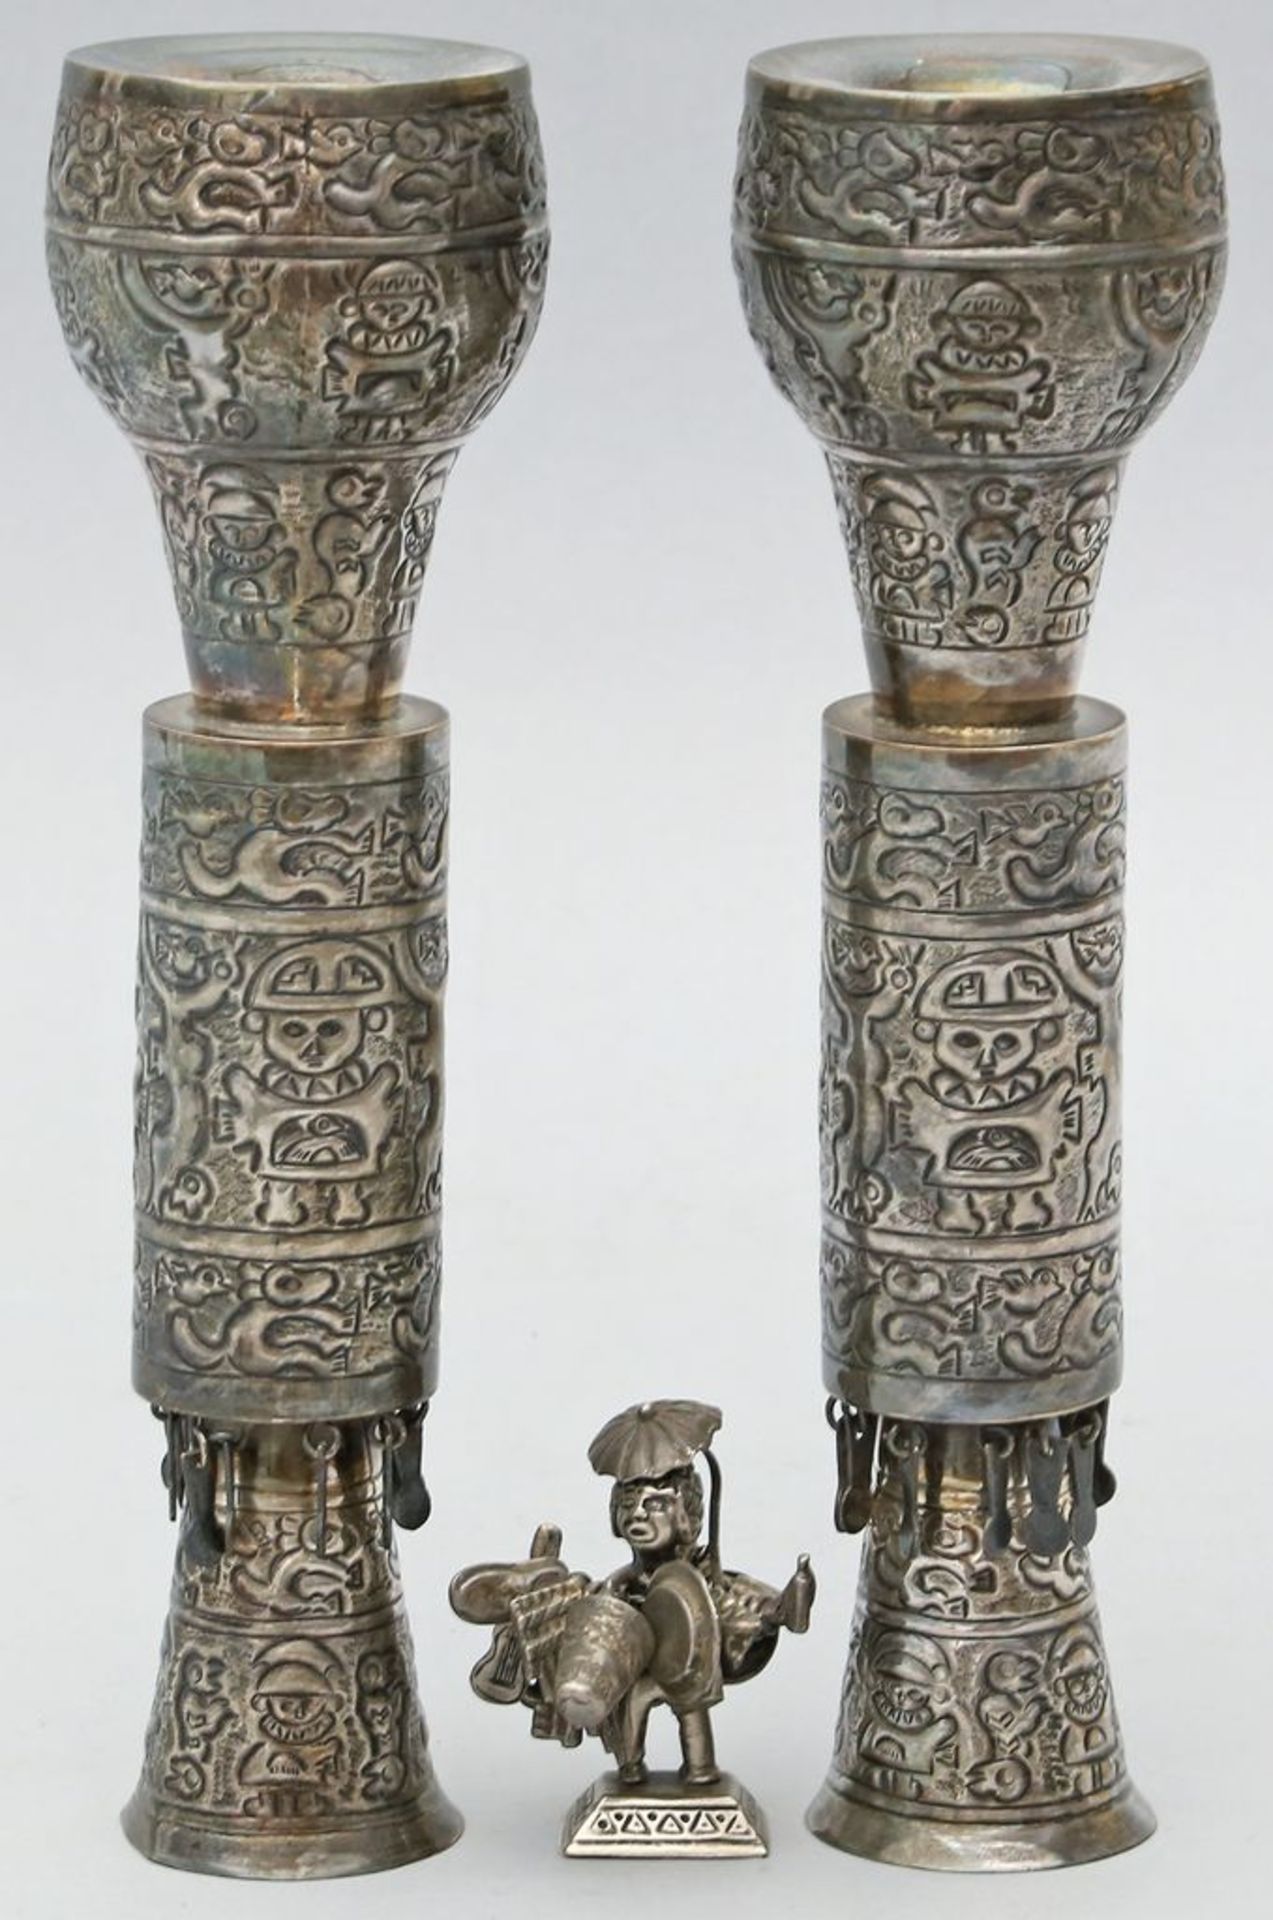 Paar Leuchter und Miniaturfigur. 925/000 Sterlingsilber, 353 g. Leuchter je einflammig